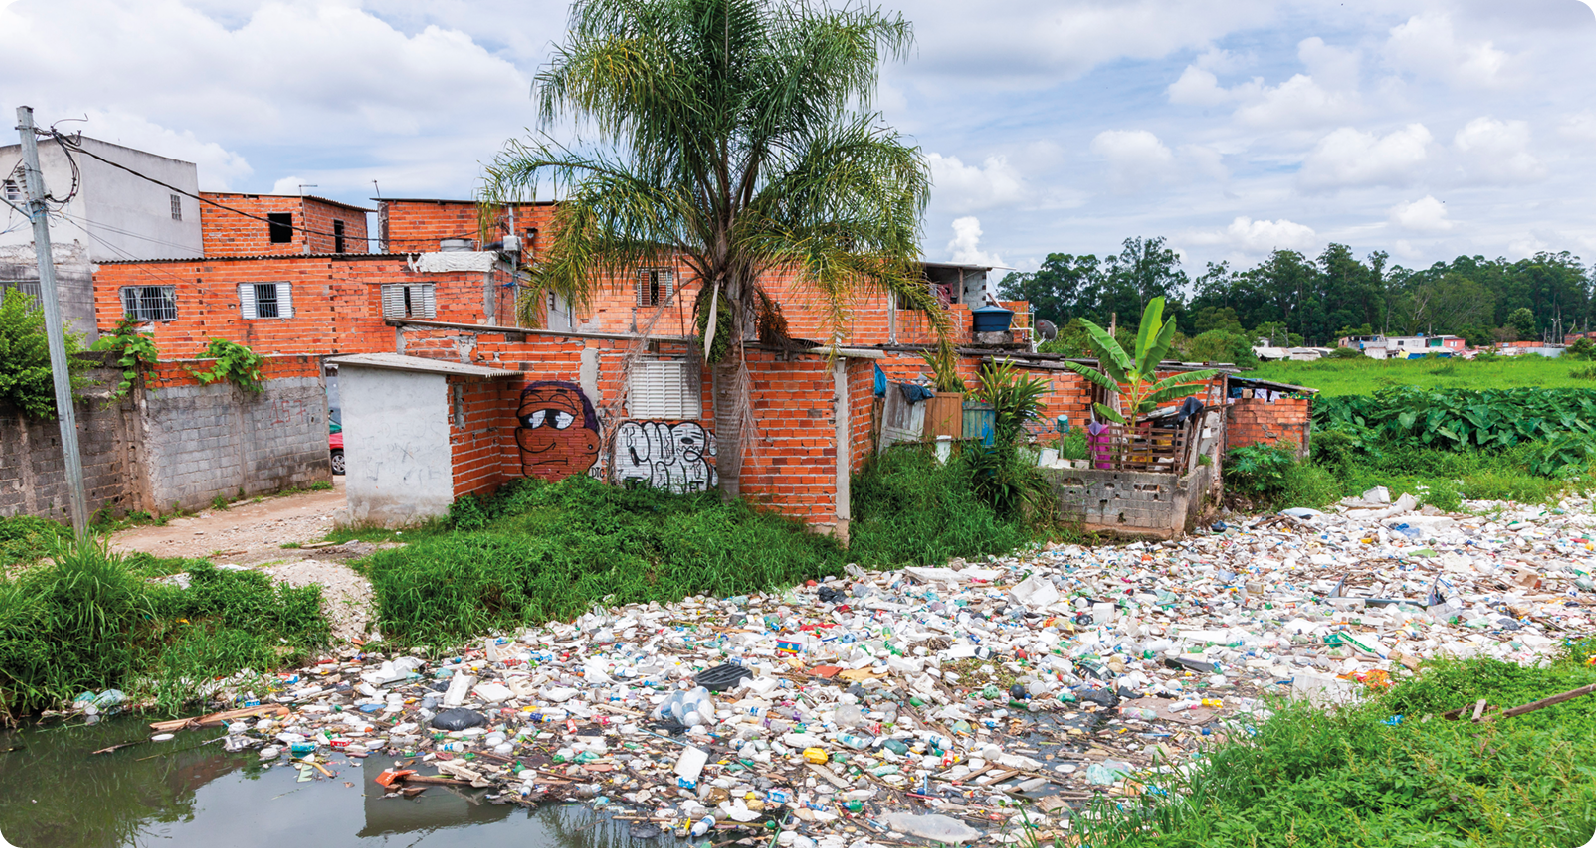 Fotografia. Curso de um rio repleto de lixo. Na margem, vegetação rasteira e casas simples com tijolos aparentes e uma palmeira.